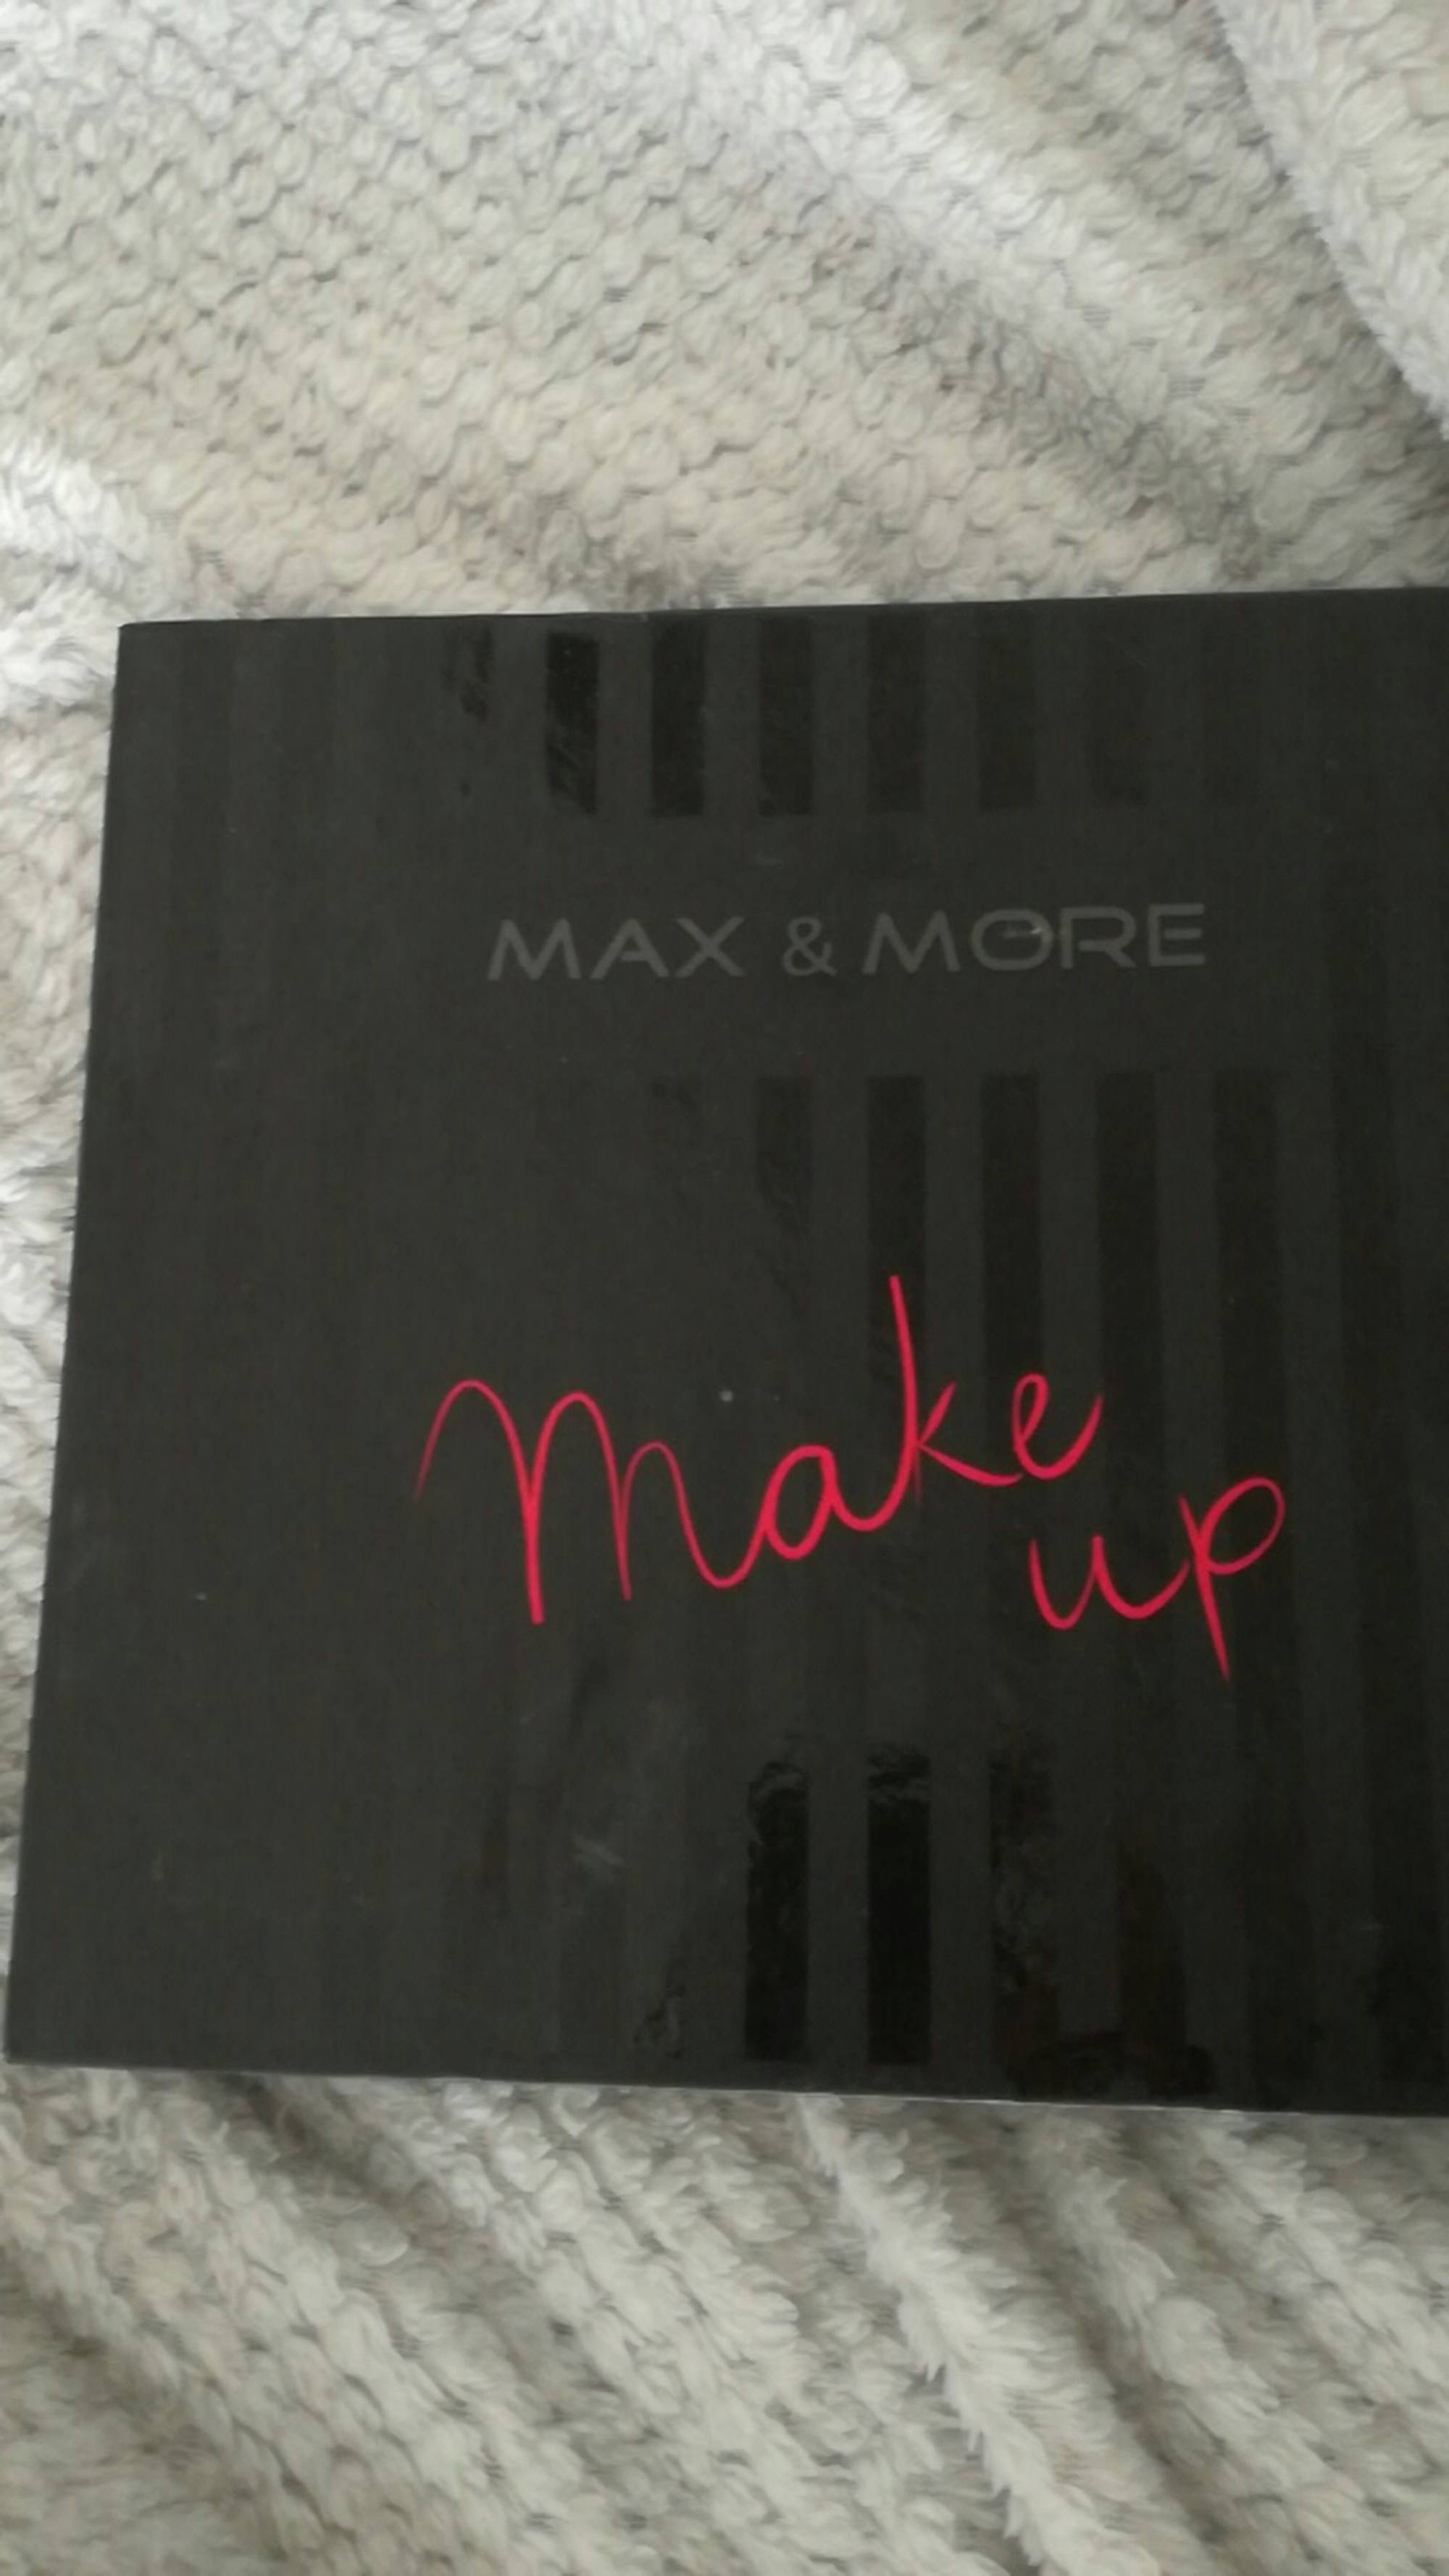 MAX & MORE - Make up